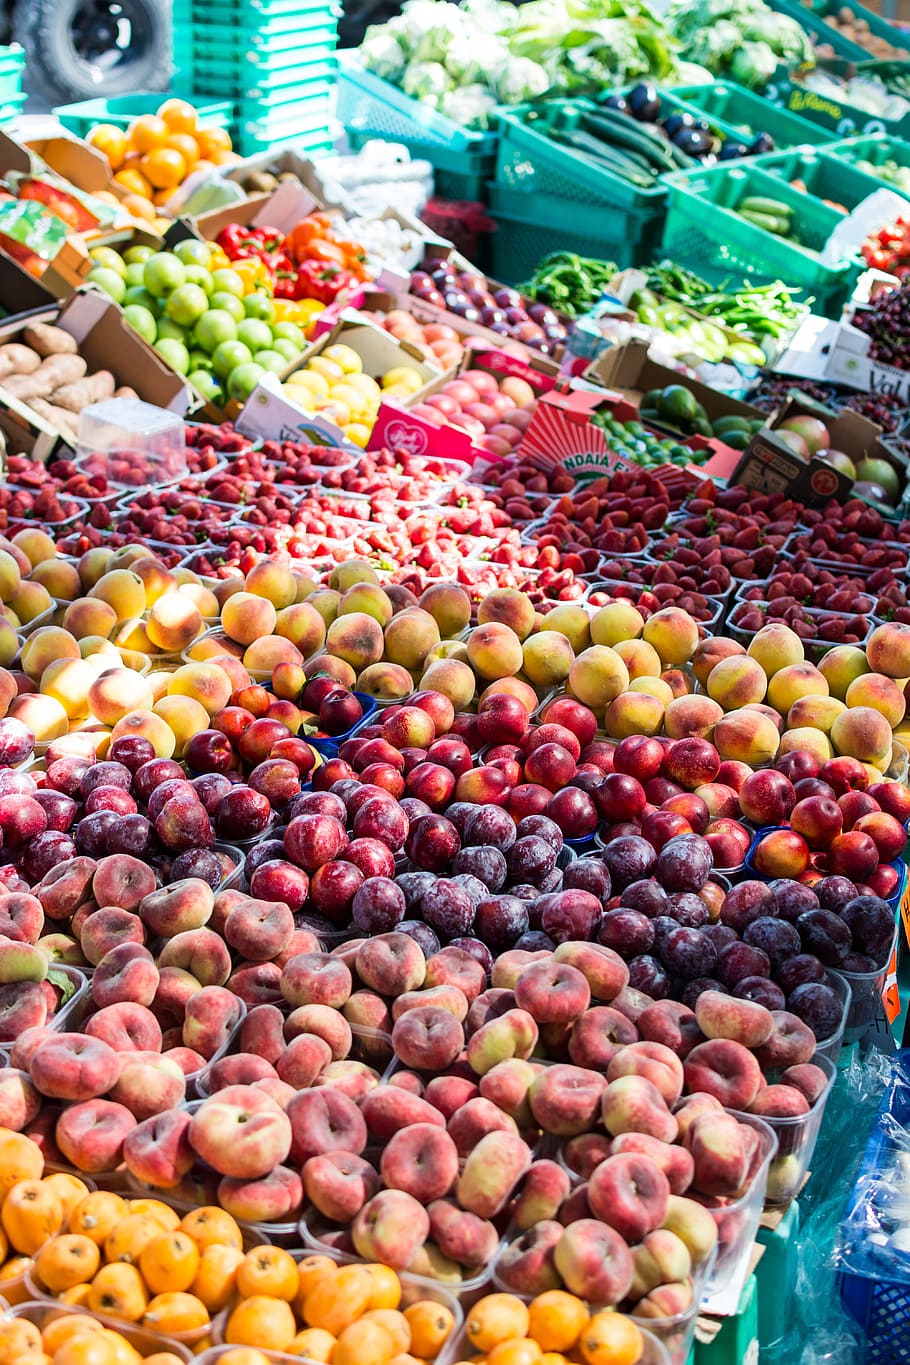 夏の果物市場, 夏の果物, 果物市場, 果物, 市場, 夏, 食品, 市場の屋台, 鮮度, 野菜